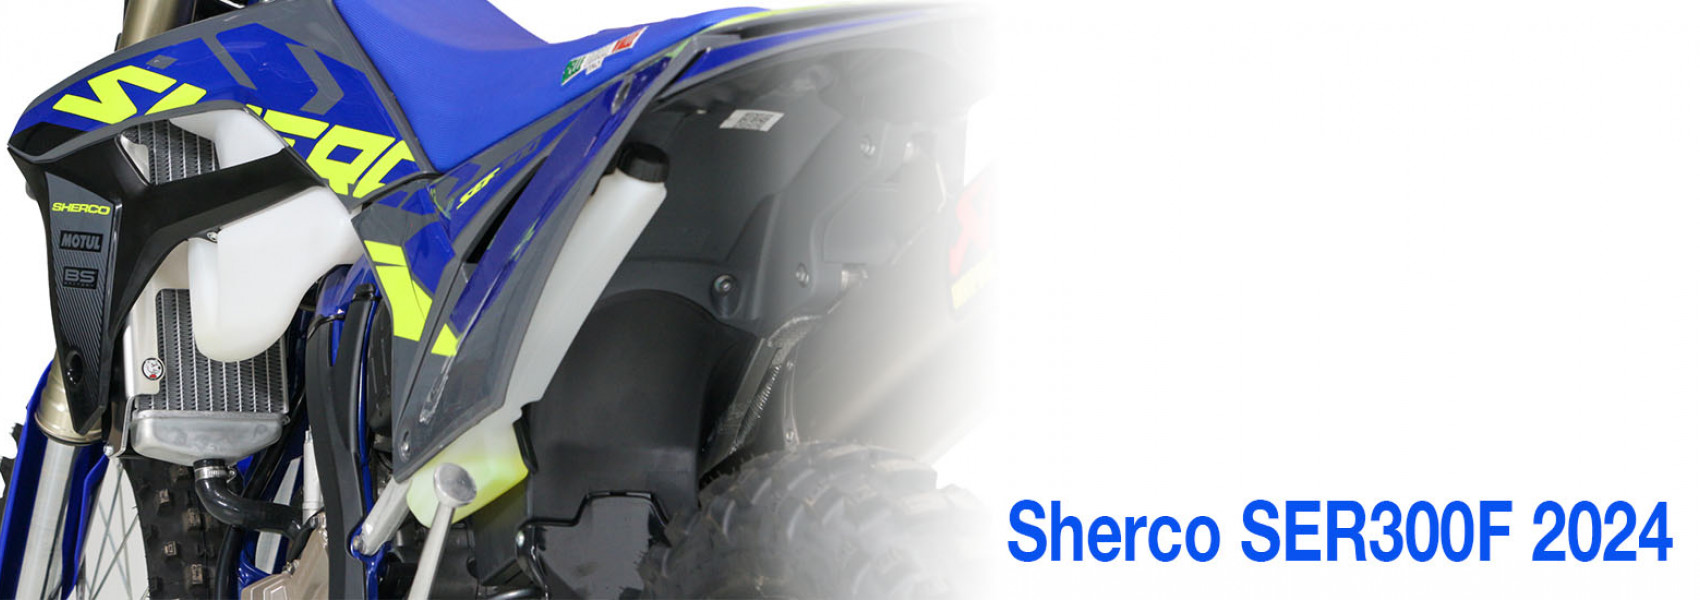 Protection Adhésive 3D pour Réservoir Moto Suzuki, Transparent, 19